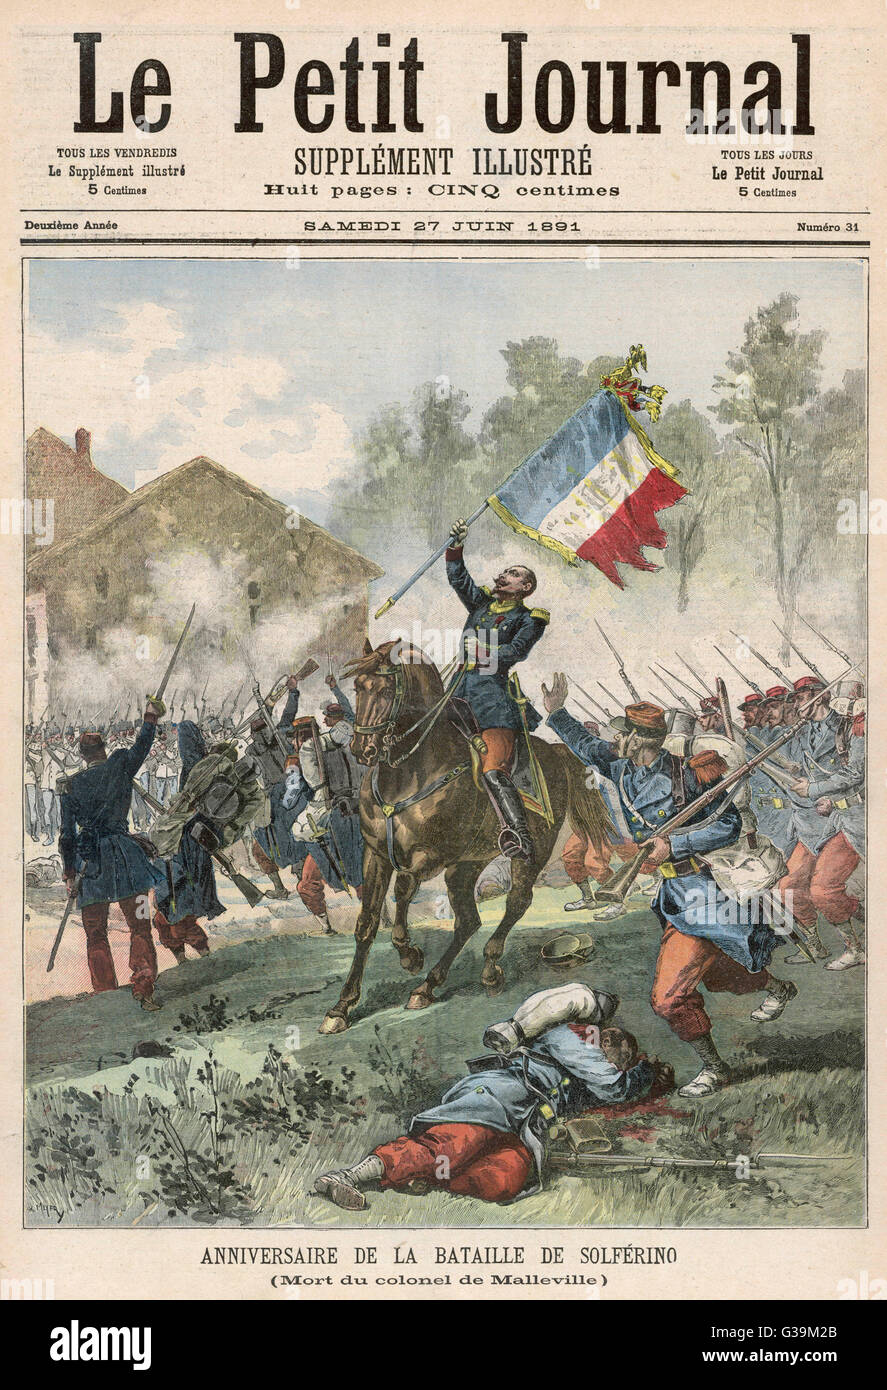 Österreichische Truppen, gegen die Einigung Italiens, sind in einer entscheidenden Schlacht bei Solferino, in der Nähe von Verona, Italien, von französischen und piemontesischen Truppen besiegt.     Datum: 24. Juni 1859 Stockfoto